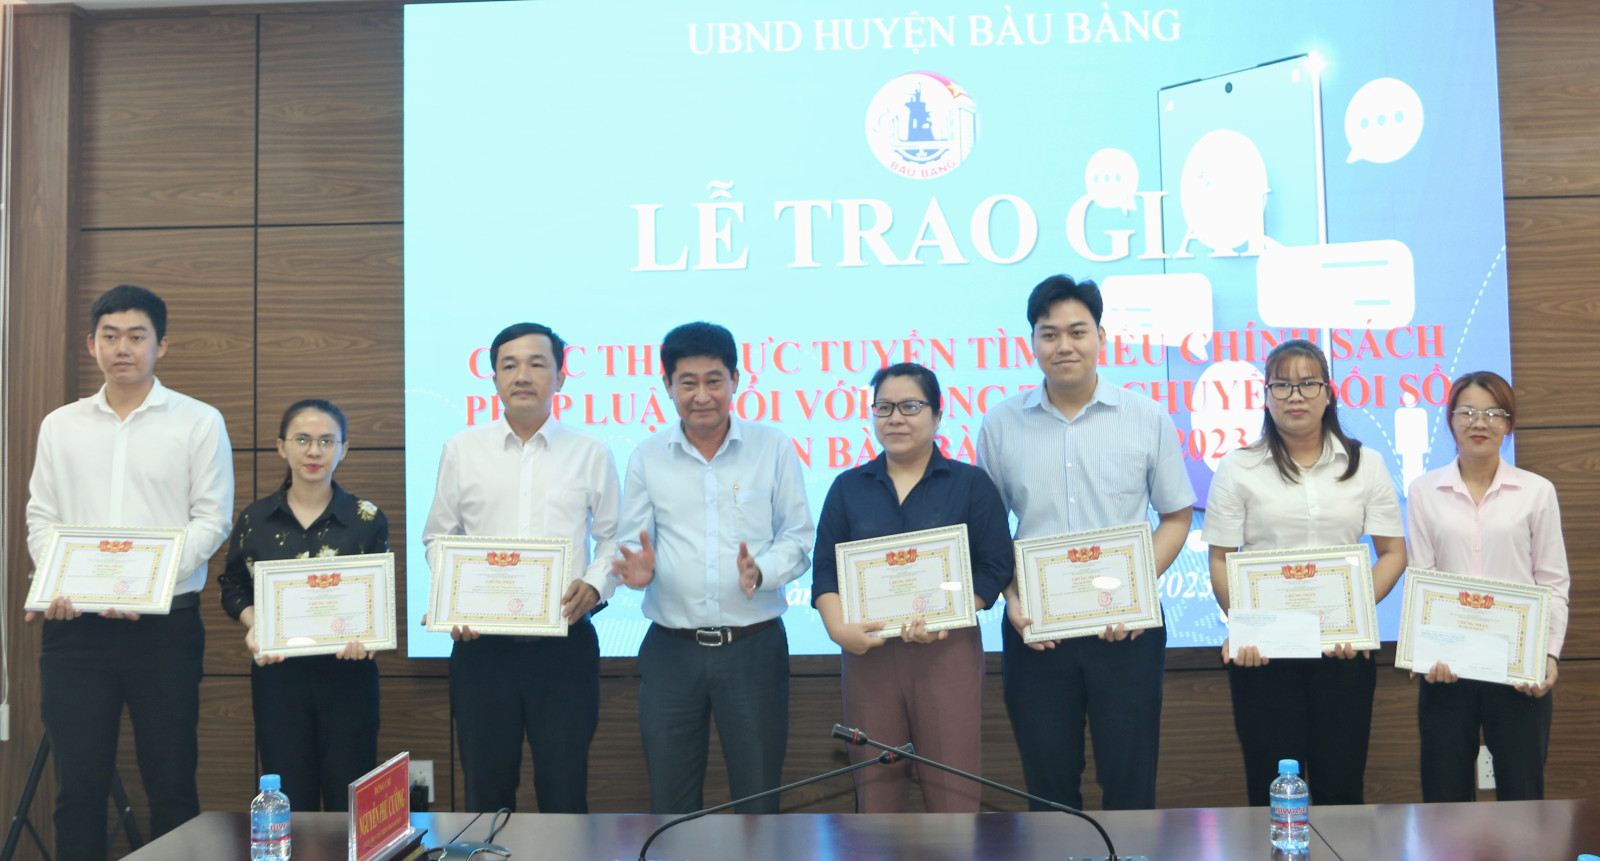 Huyện Bàu Bàng: Trao giải cuộc thi trực tuyến tìm hiểu chính sách, pháp luật đối với công tác chuyển đổi số